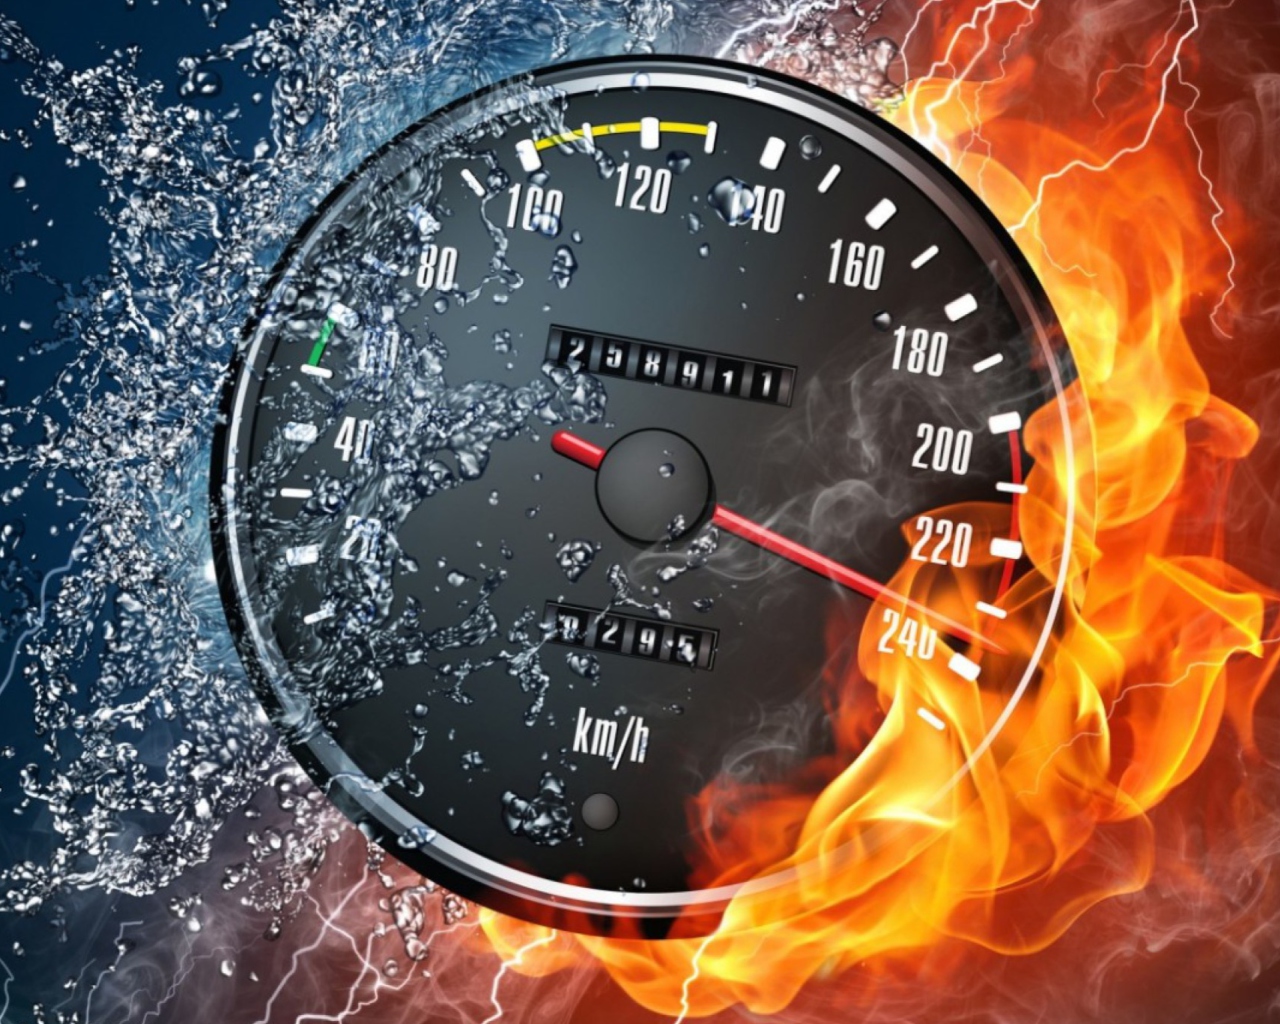 Das Fire Speedometer Wallpaper 1280x1024